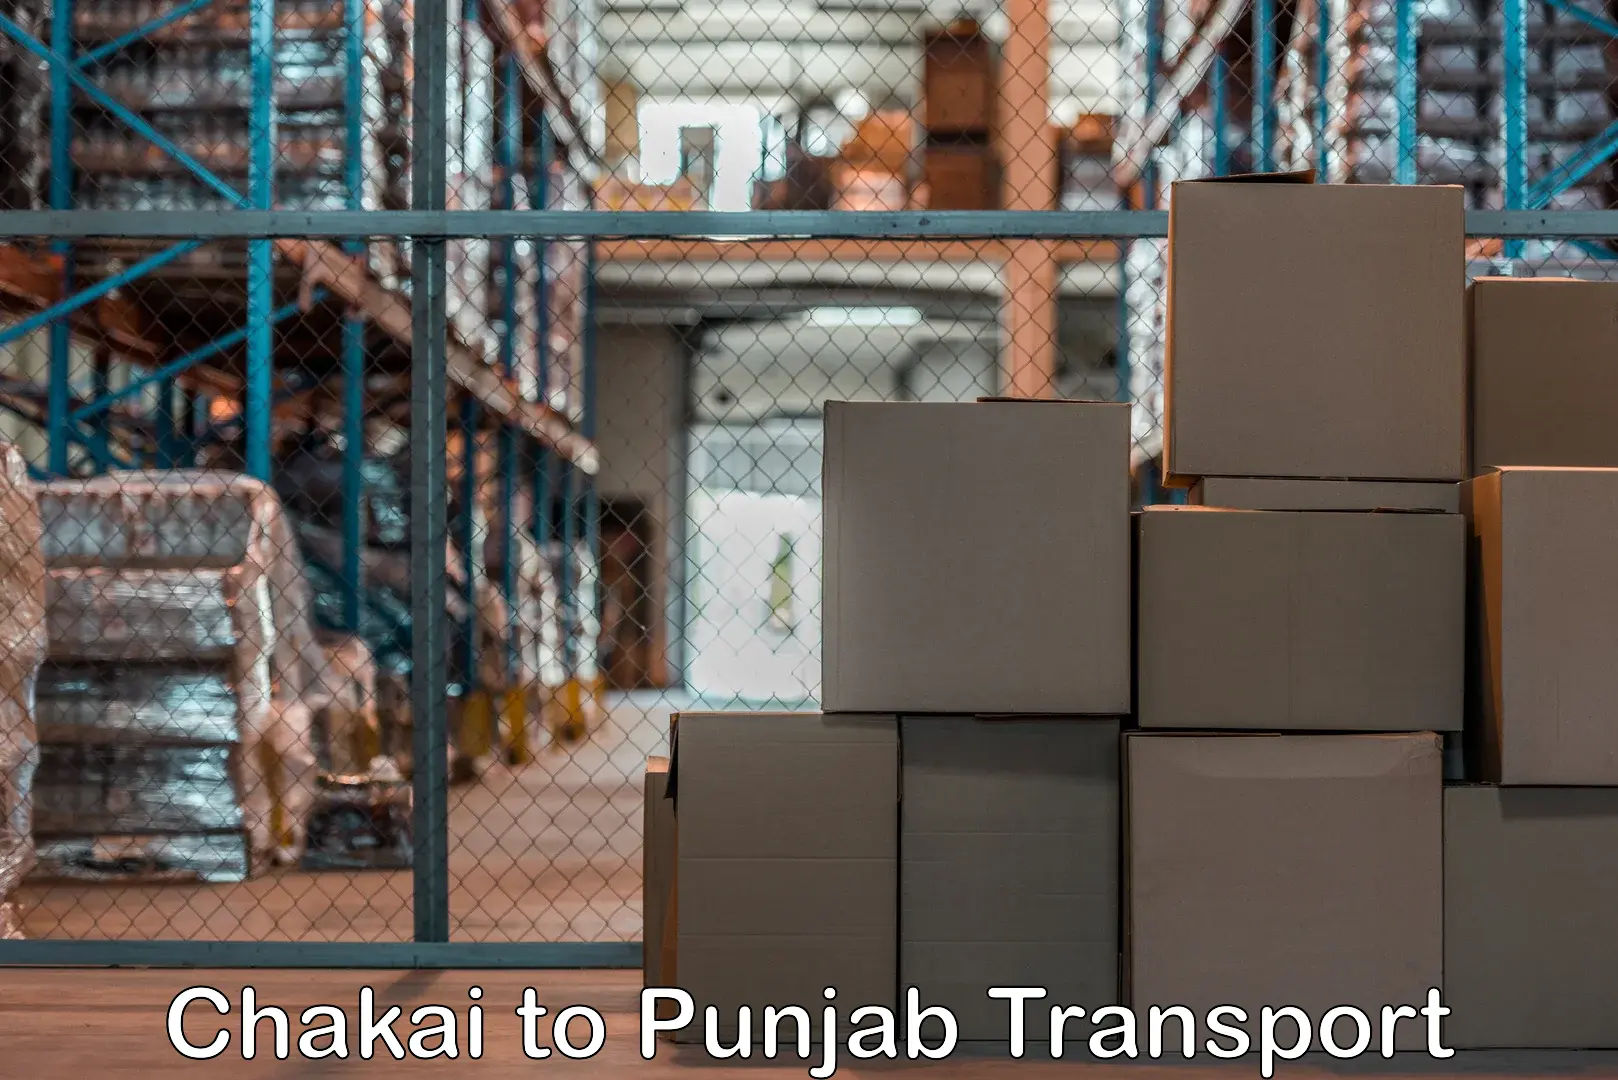 Air cargo transport services Chakai to Ajnala